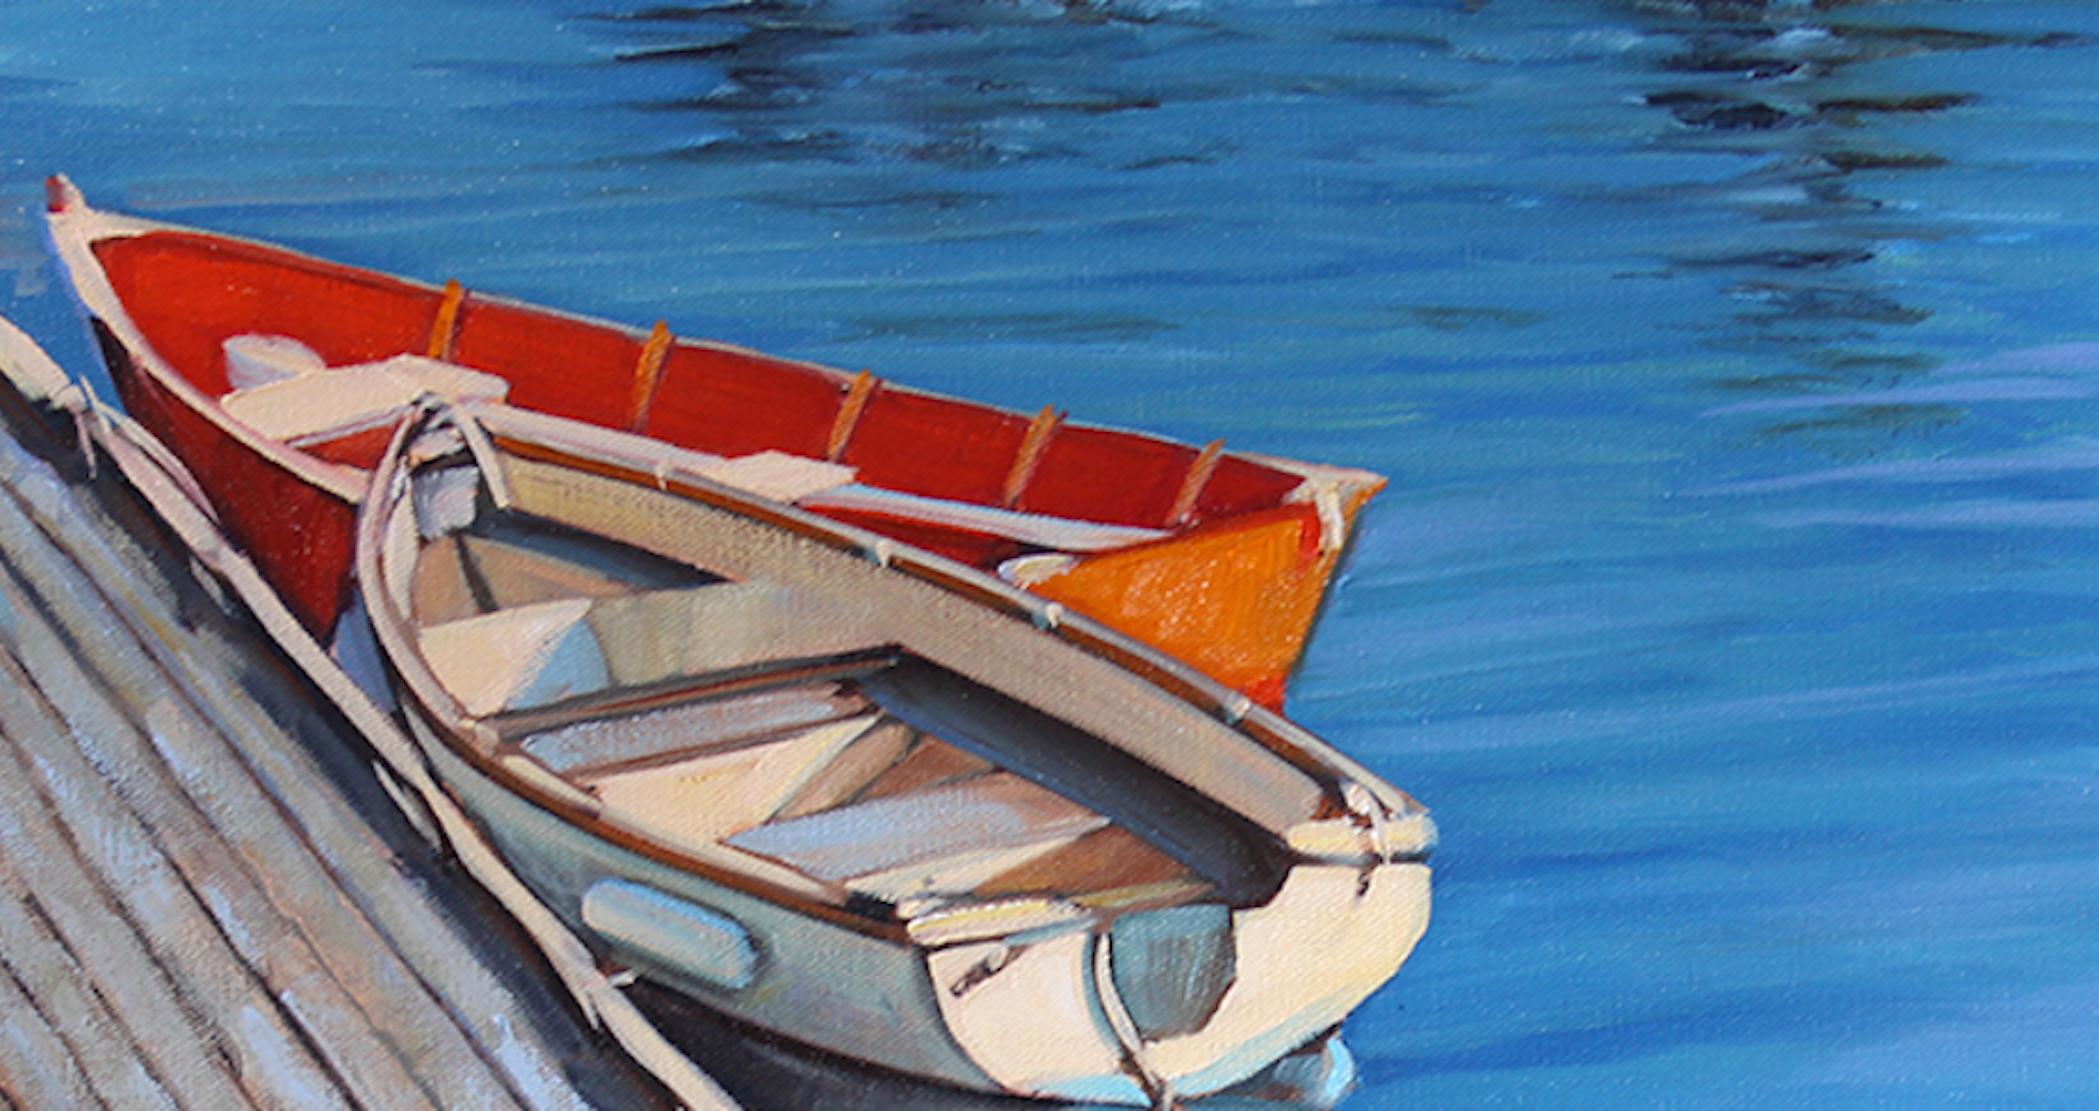  „Cape Ann Trio“ Holzboot mit leuchtenden Wasserreflektoren, aufgehängt – Painting von Tom Swimm